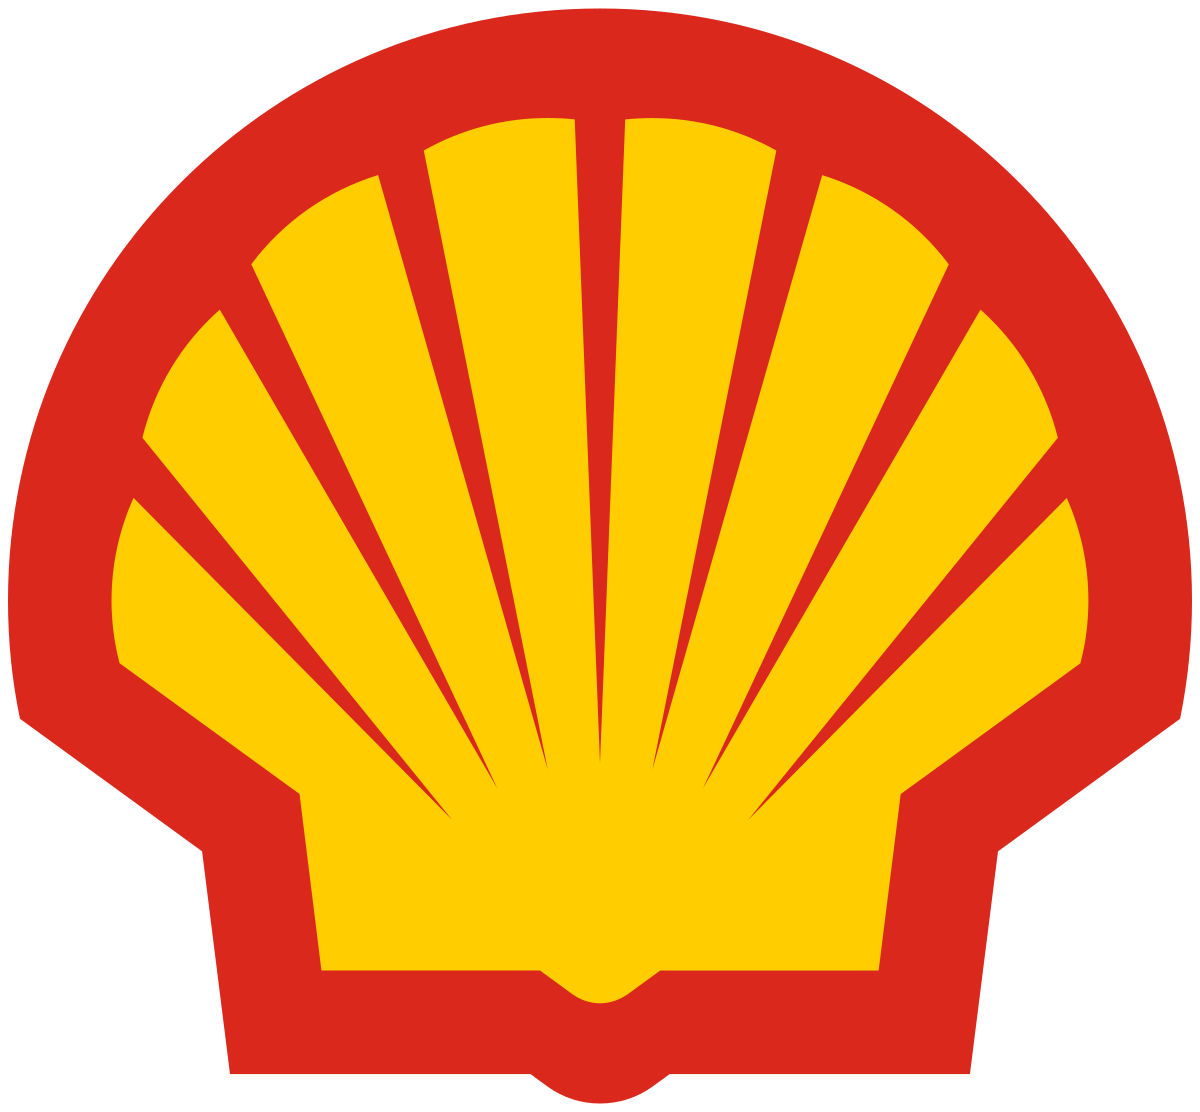 Shell - Wikipedia